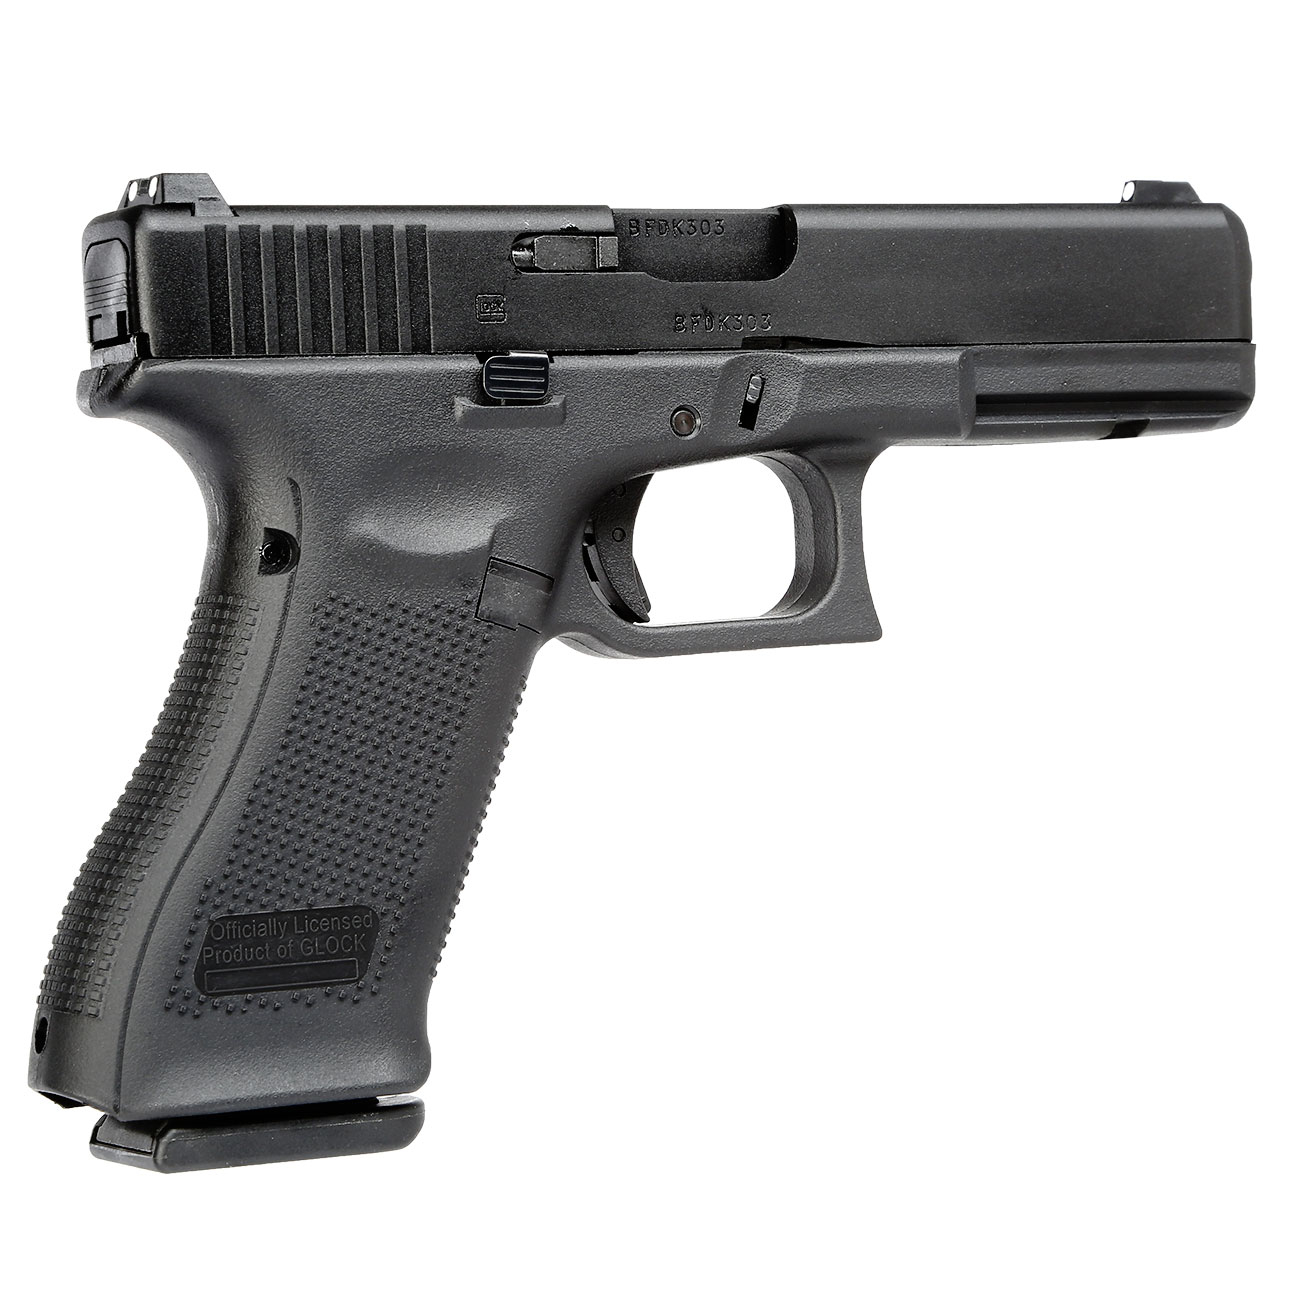 VFC Glock 17 Gen. 5 mit Metallschlitten GBB 6mm BB schwarz Bild 4